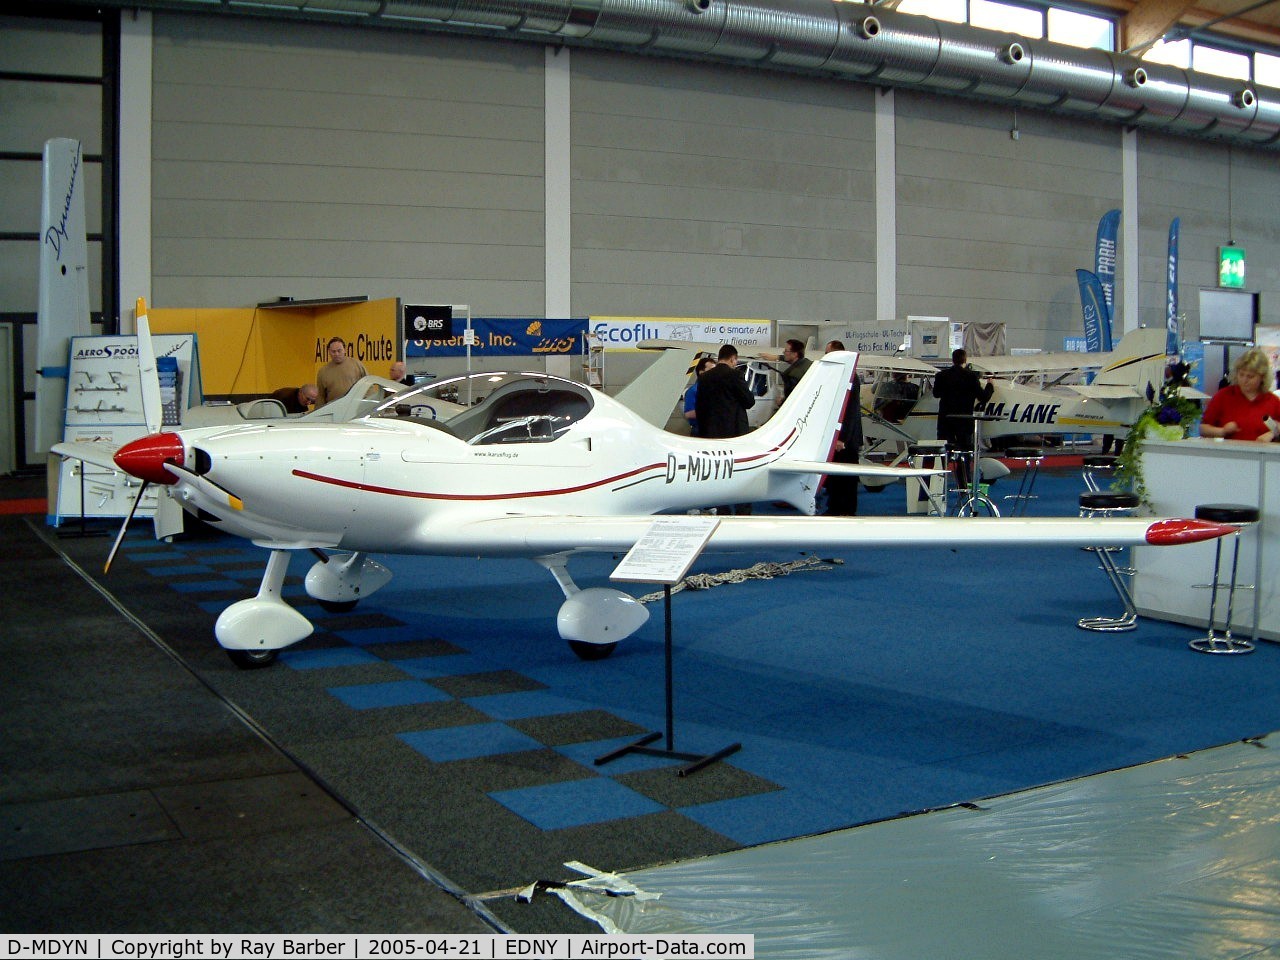 D-MDYN, 2005 Aerospool WT-9 Dynamic C/N DY076/2005, Aerospool WT-9 Dynamic [DY076/2005]  Friedrichshafen~D  21/04/2005. At show.